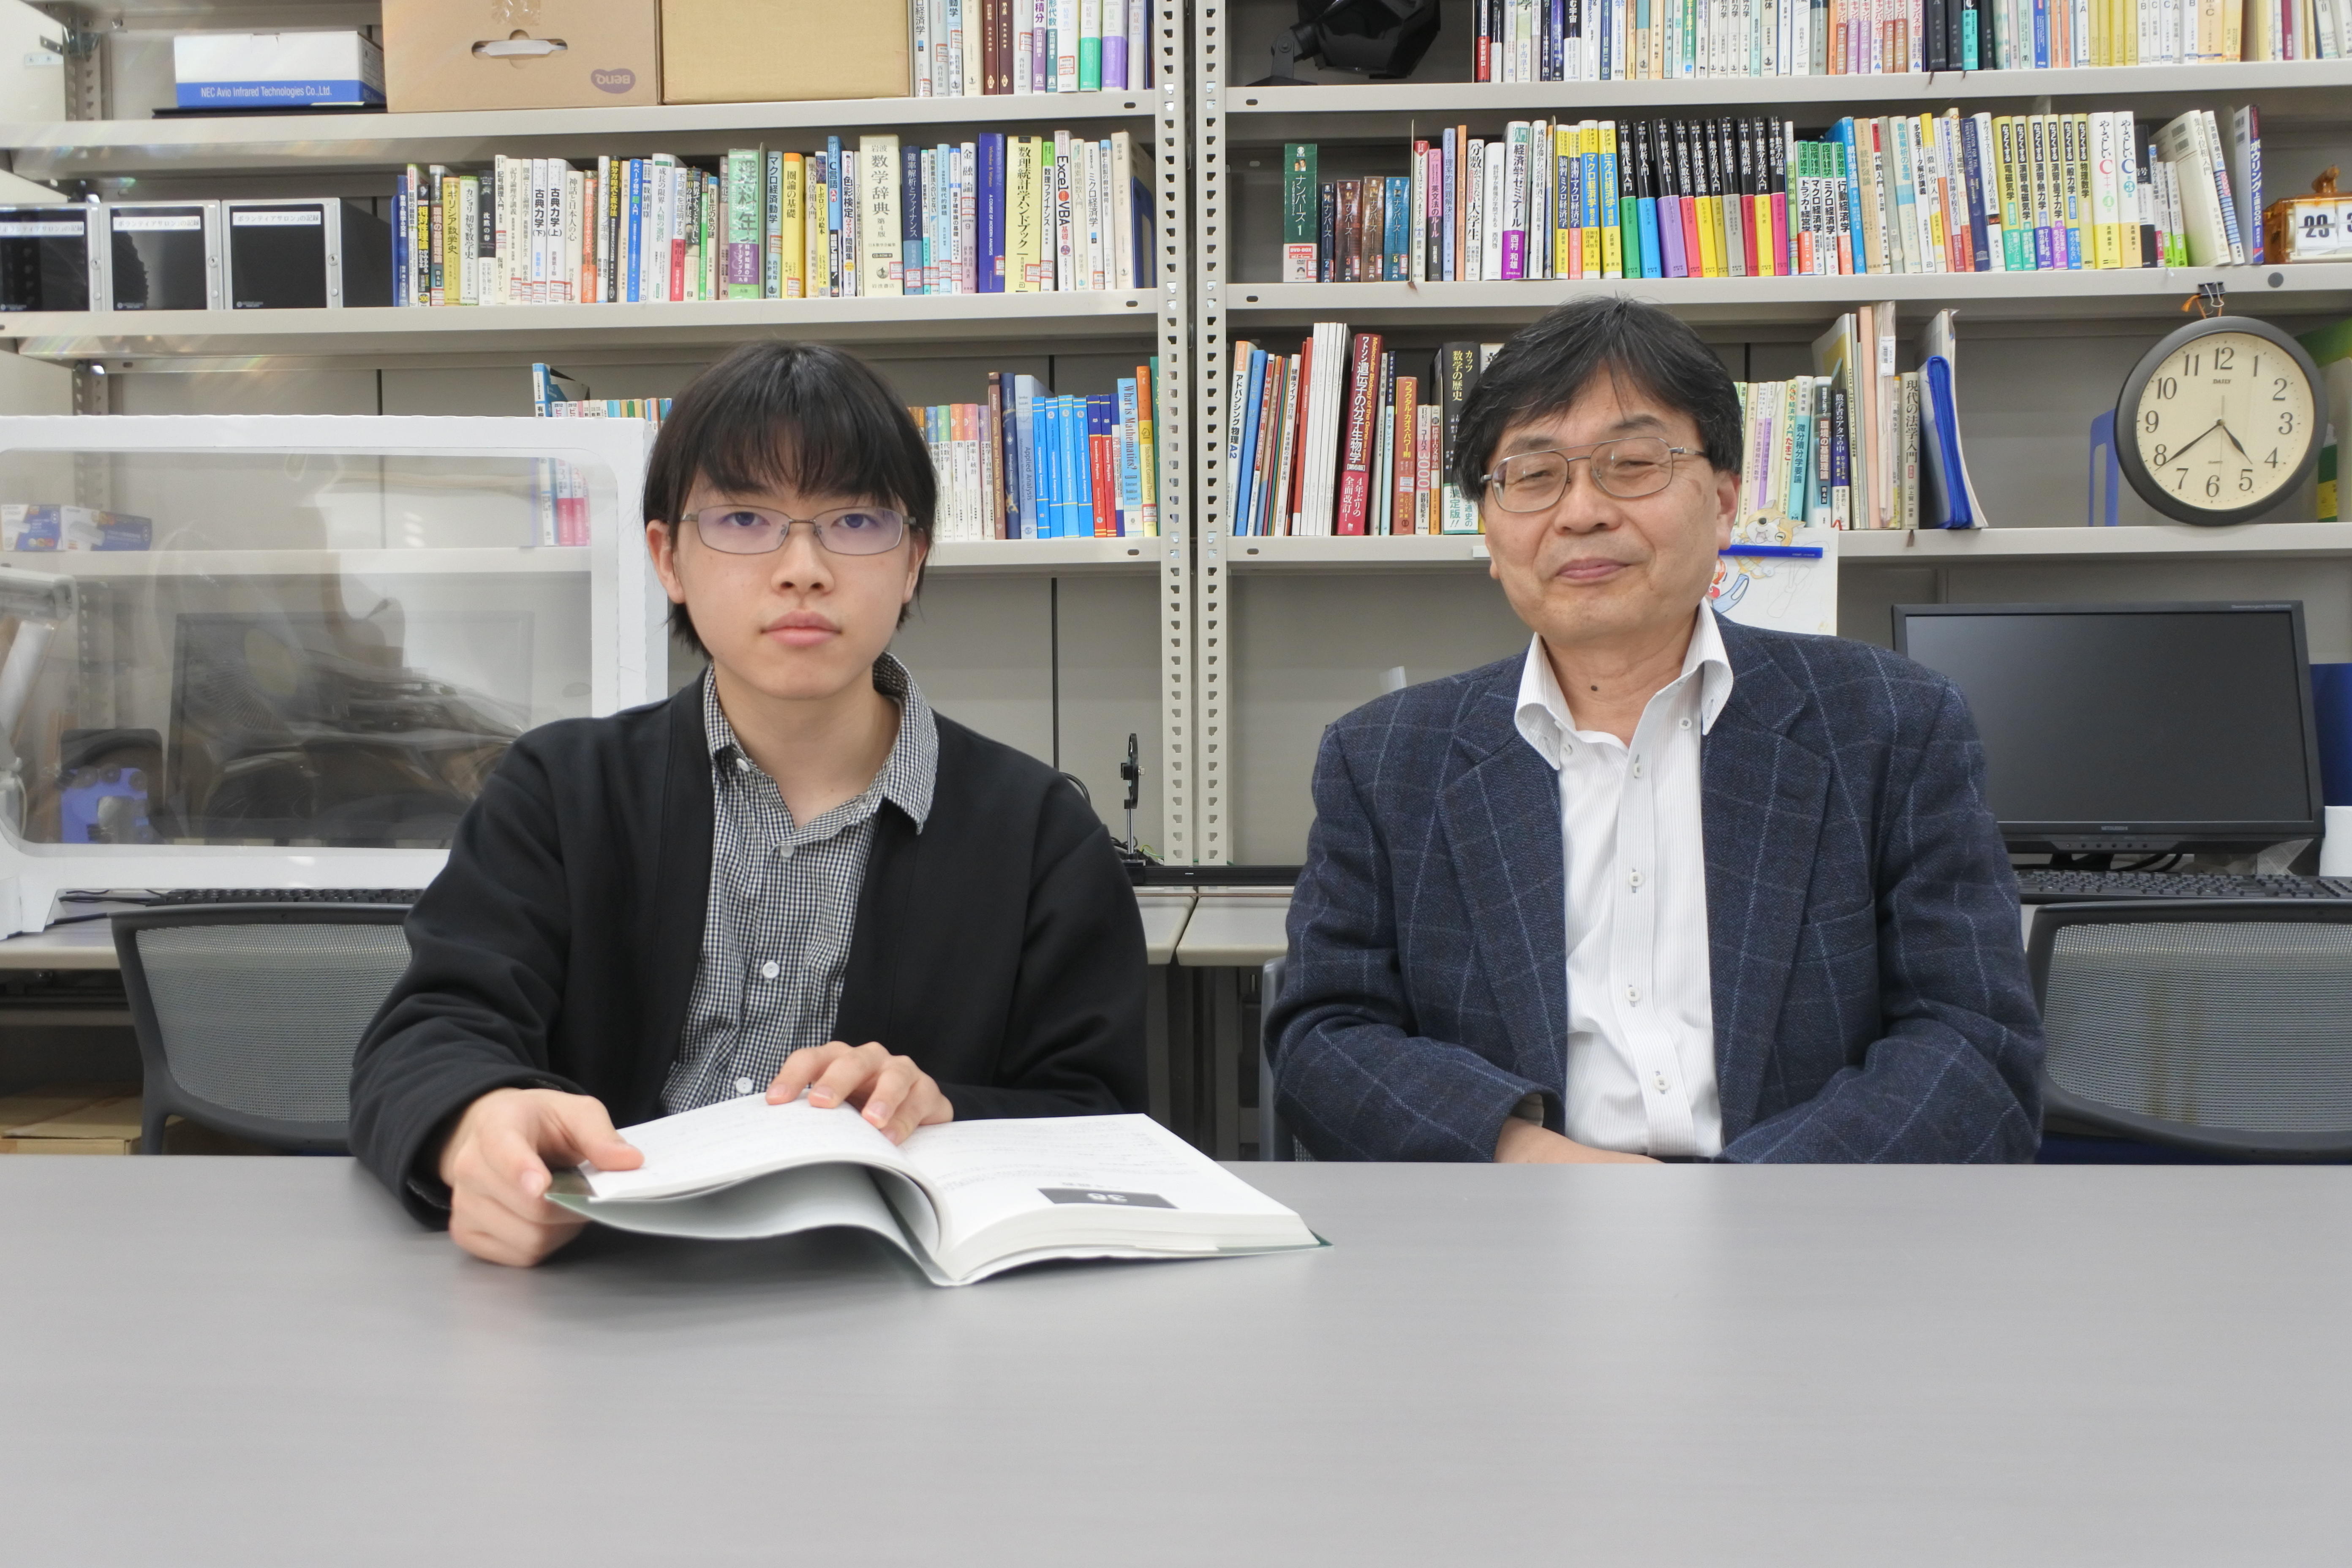 鈴木紀明教授（右）とその著書を開く大岩亮太さん